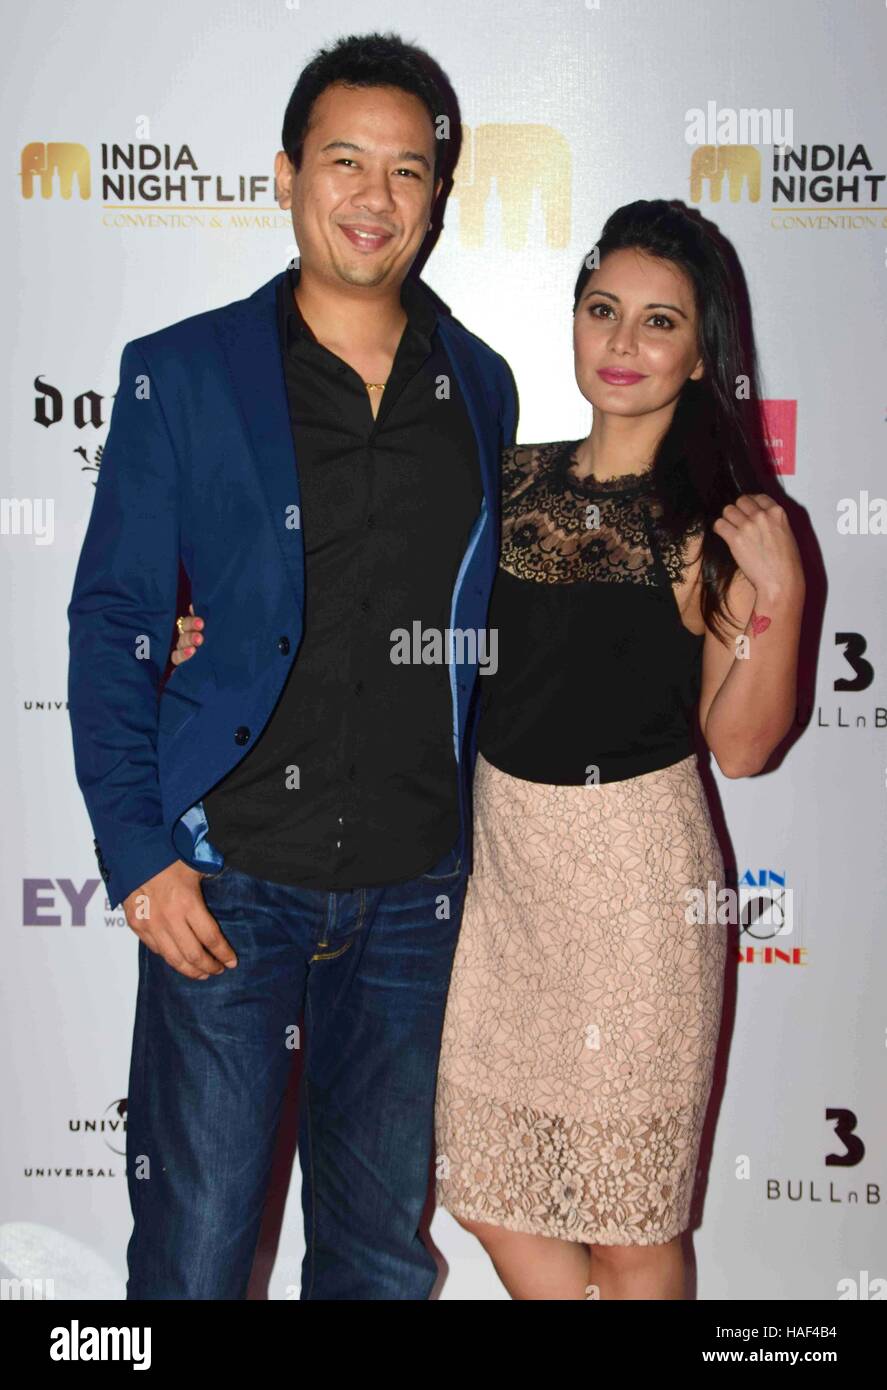 Ryan Tham, Besitzer Trilogie Night Club und seine Frau Bollywood Schauspieler Minissha Lamba Indien Nachtleben Convention Awards Mumbai Stockfoto